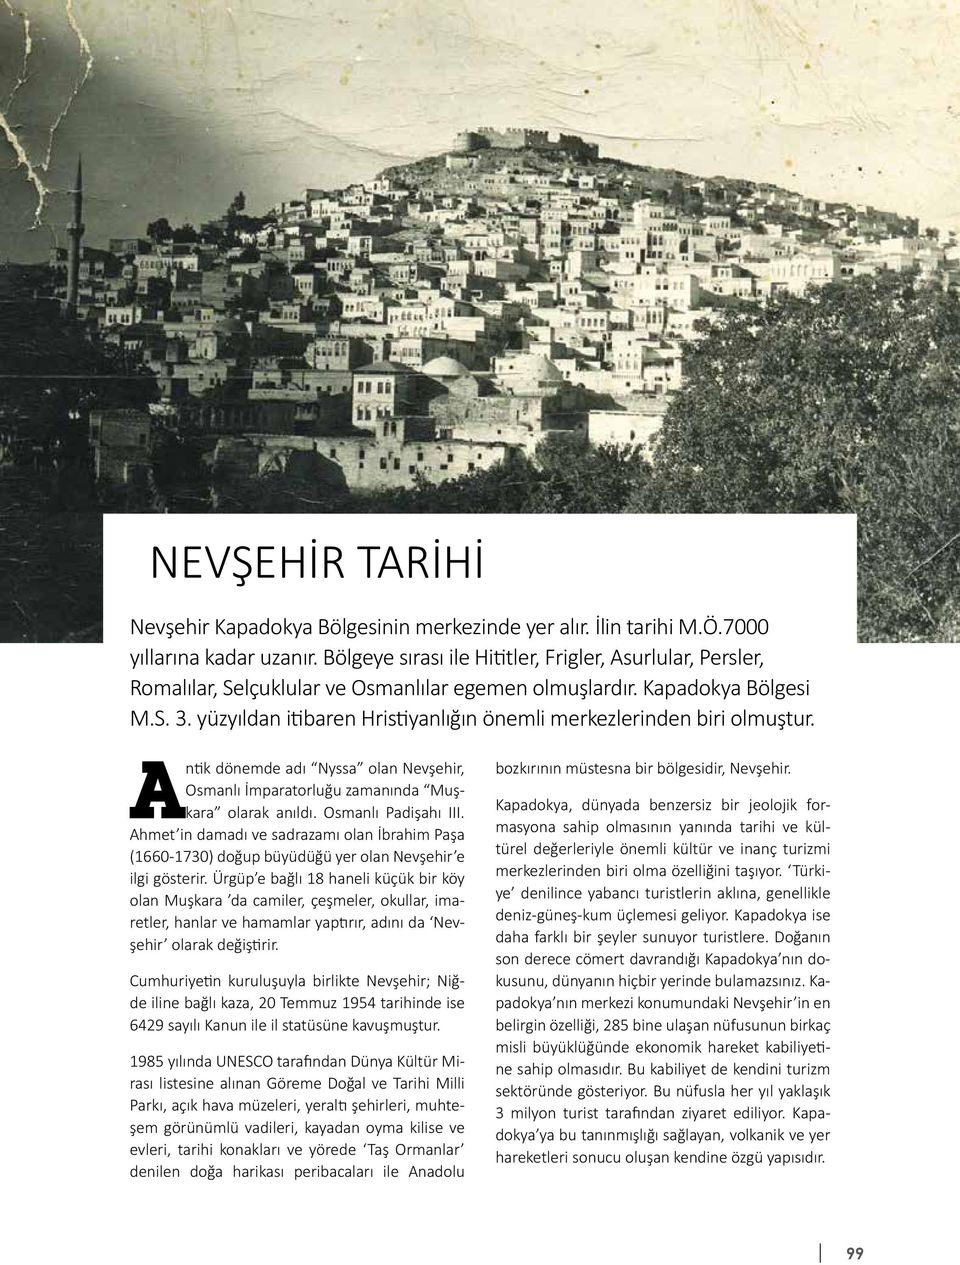 yüzyıldan itibaren Hristiyanlığın önemli merkezlerinden biri olmuştur. Antik dönemde adı Nyssa olan Nevşehir, Osmanlı İmparatorluğu zamanında Muşkara olarak anıldı. Osmanlı Padişahı III.